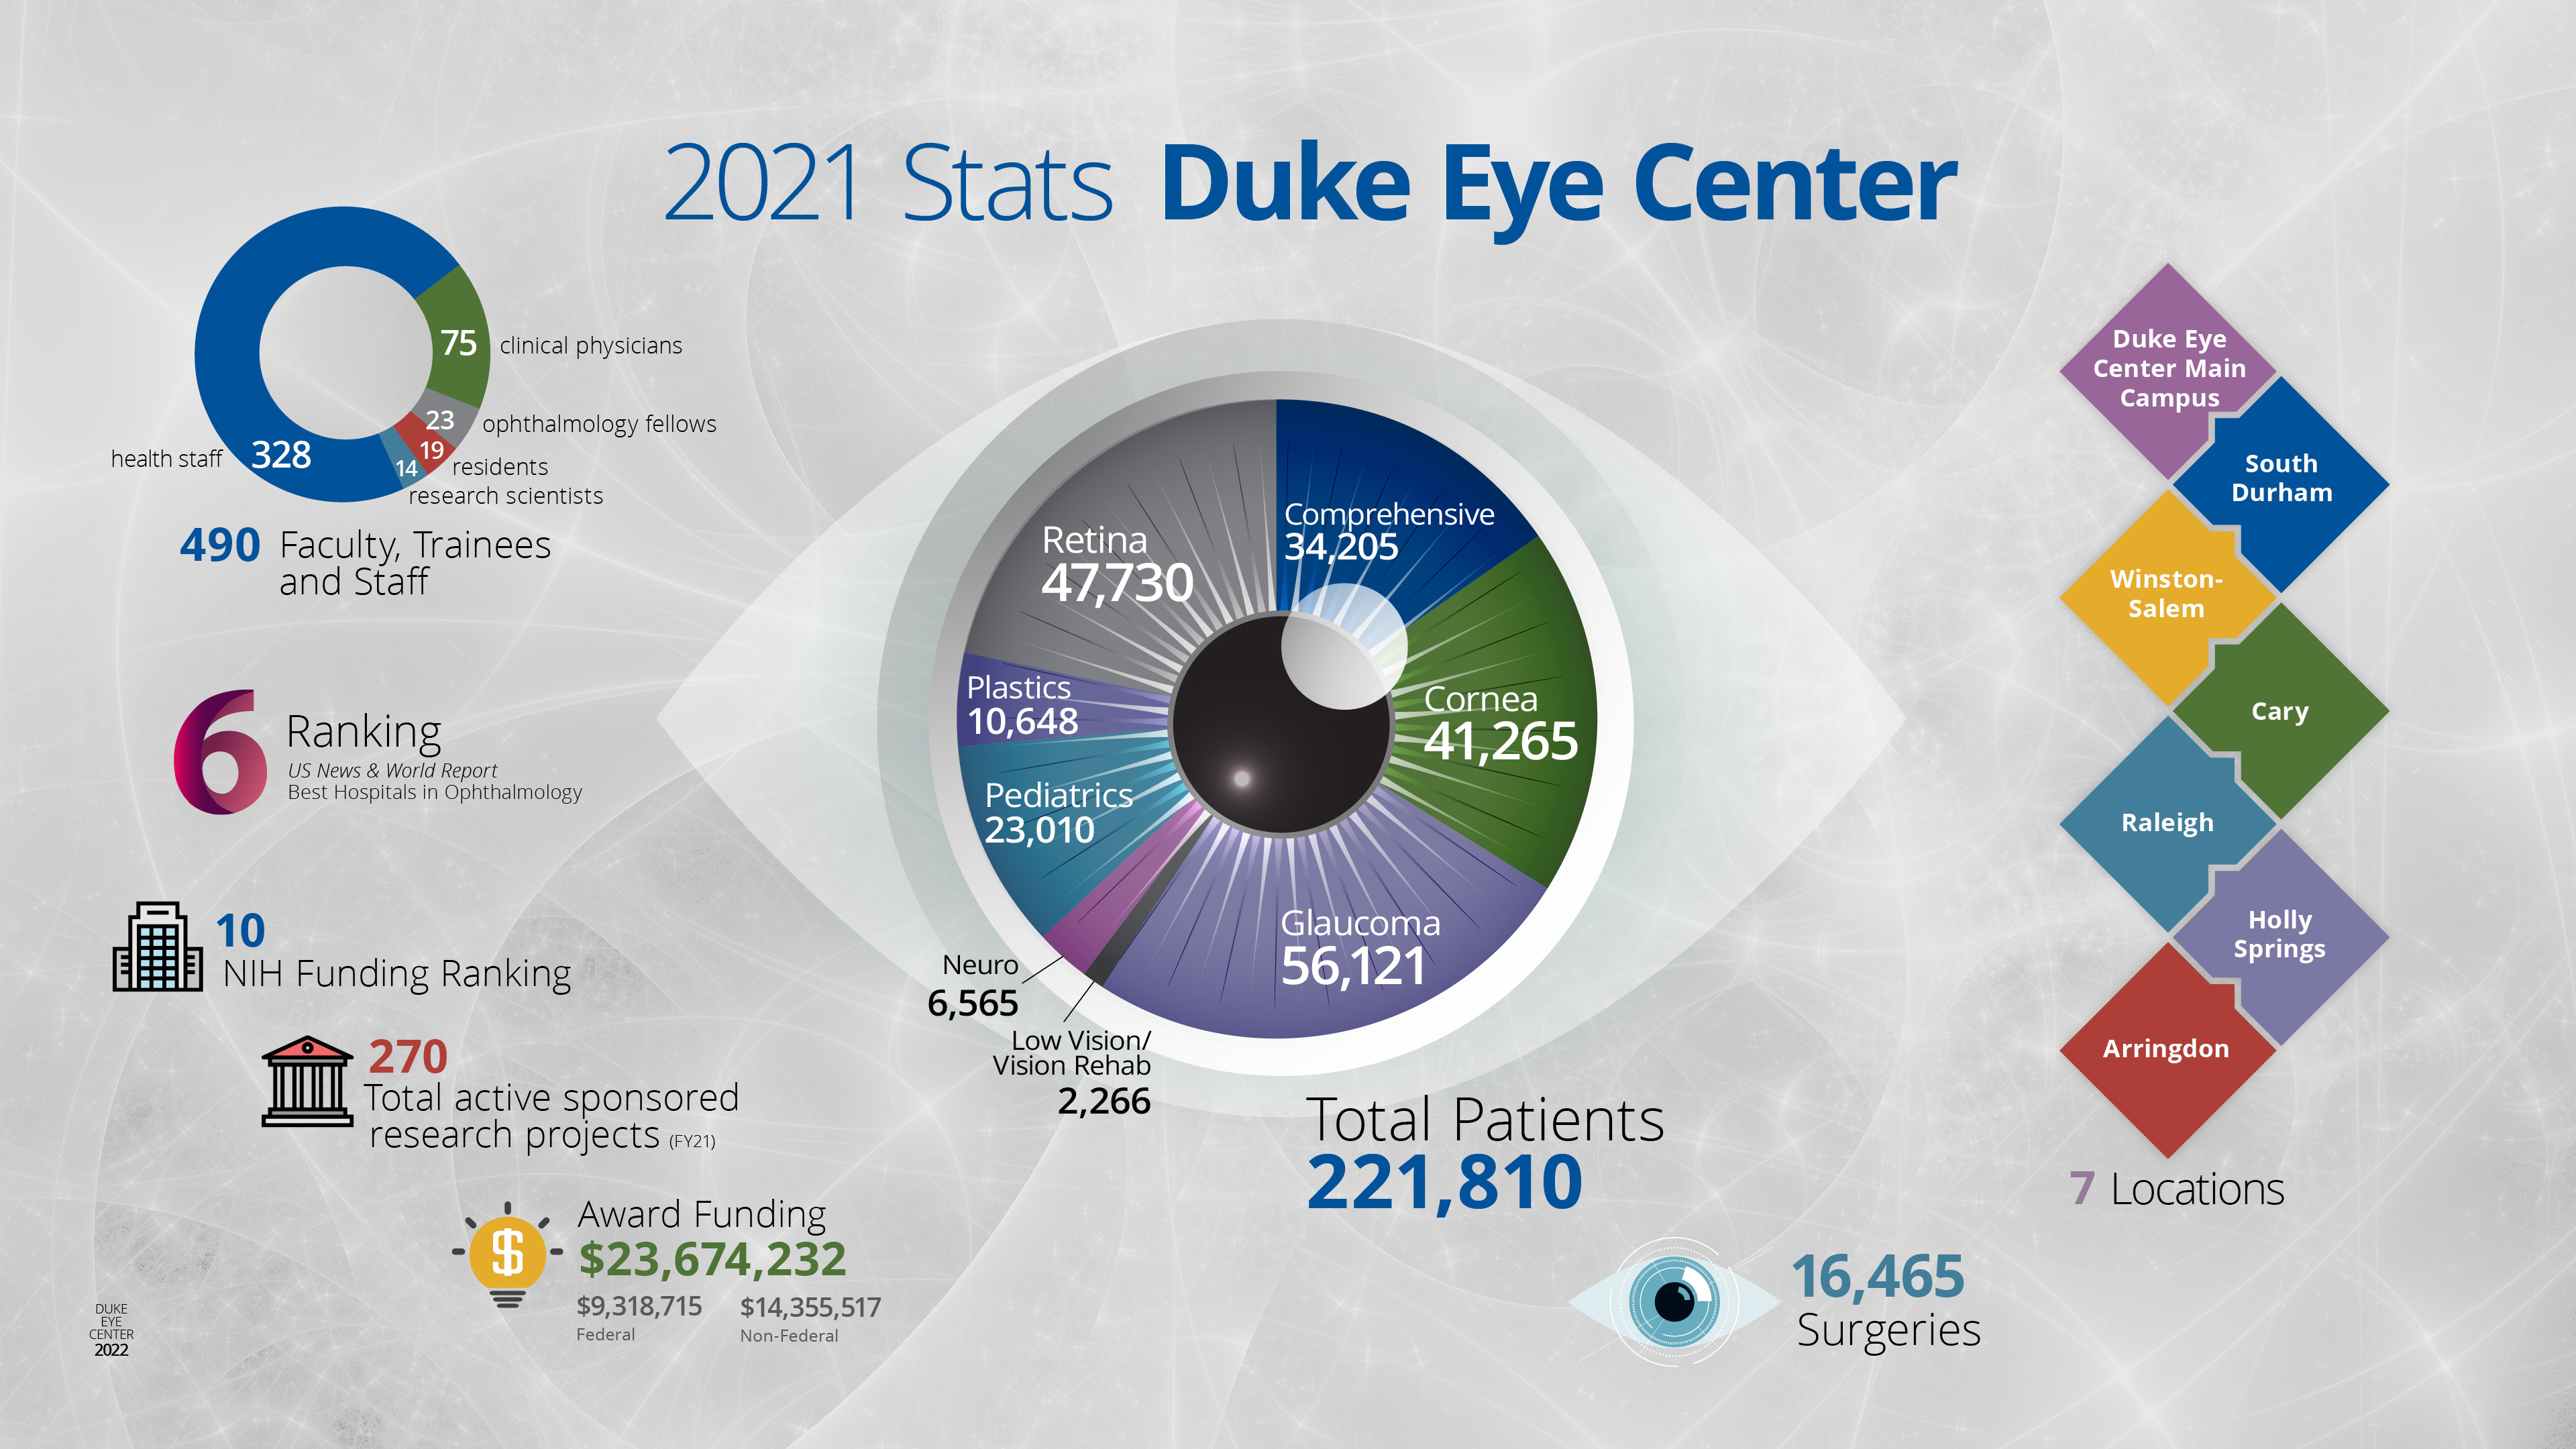 2021 Stats Duke Eye Center